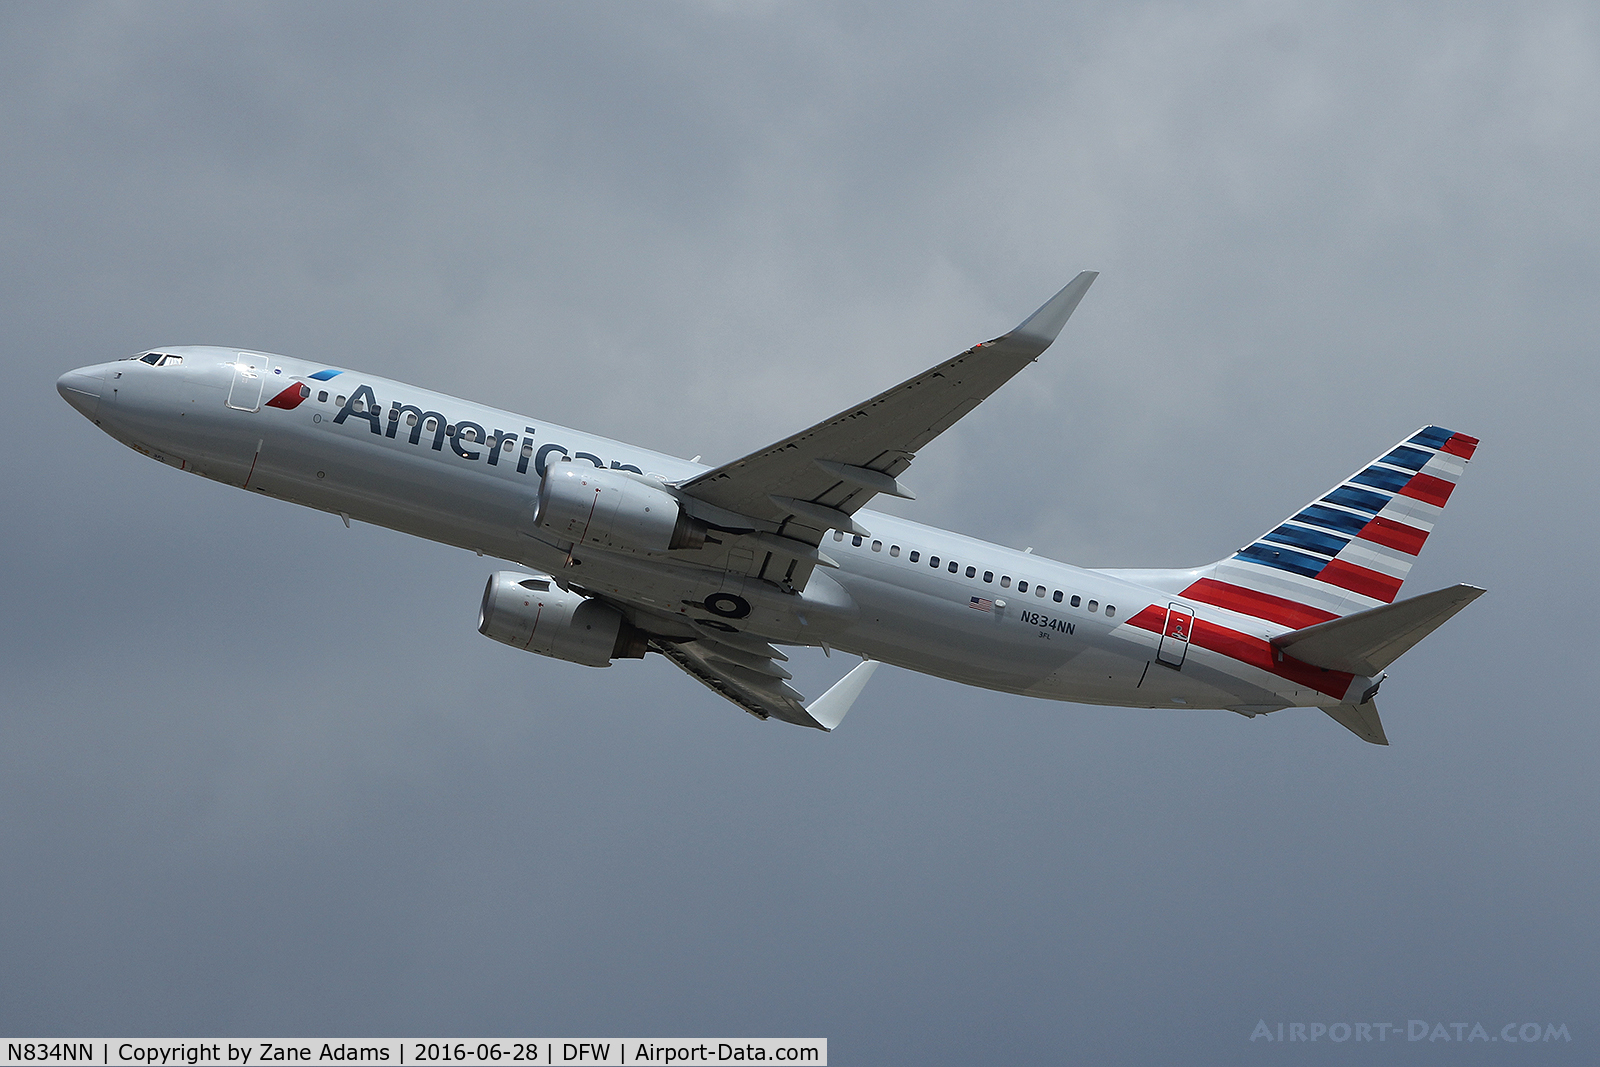 N834NN, 2010 Boeing 737-823 C/N 29576, American Airlines departing DFW